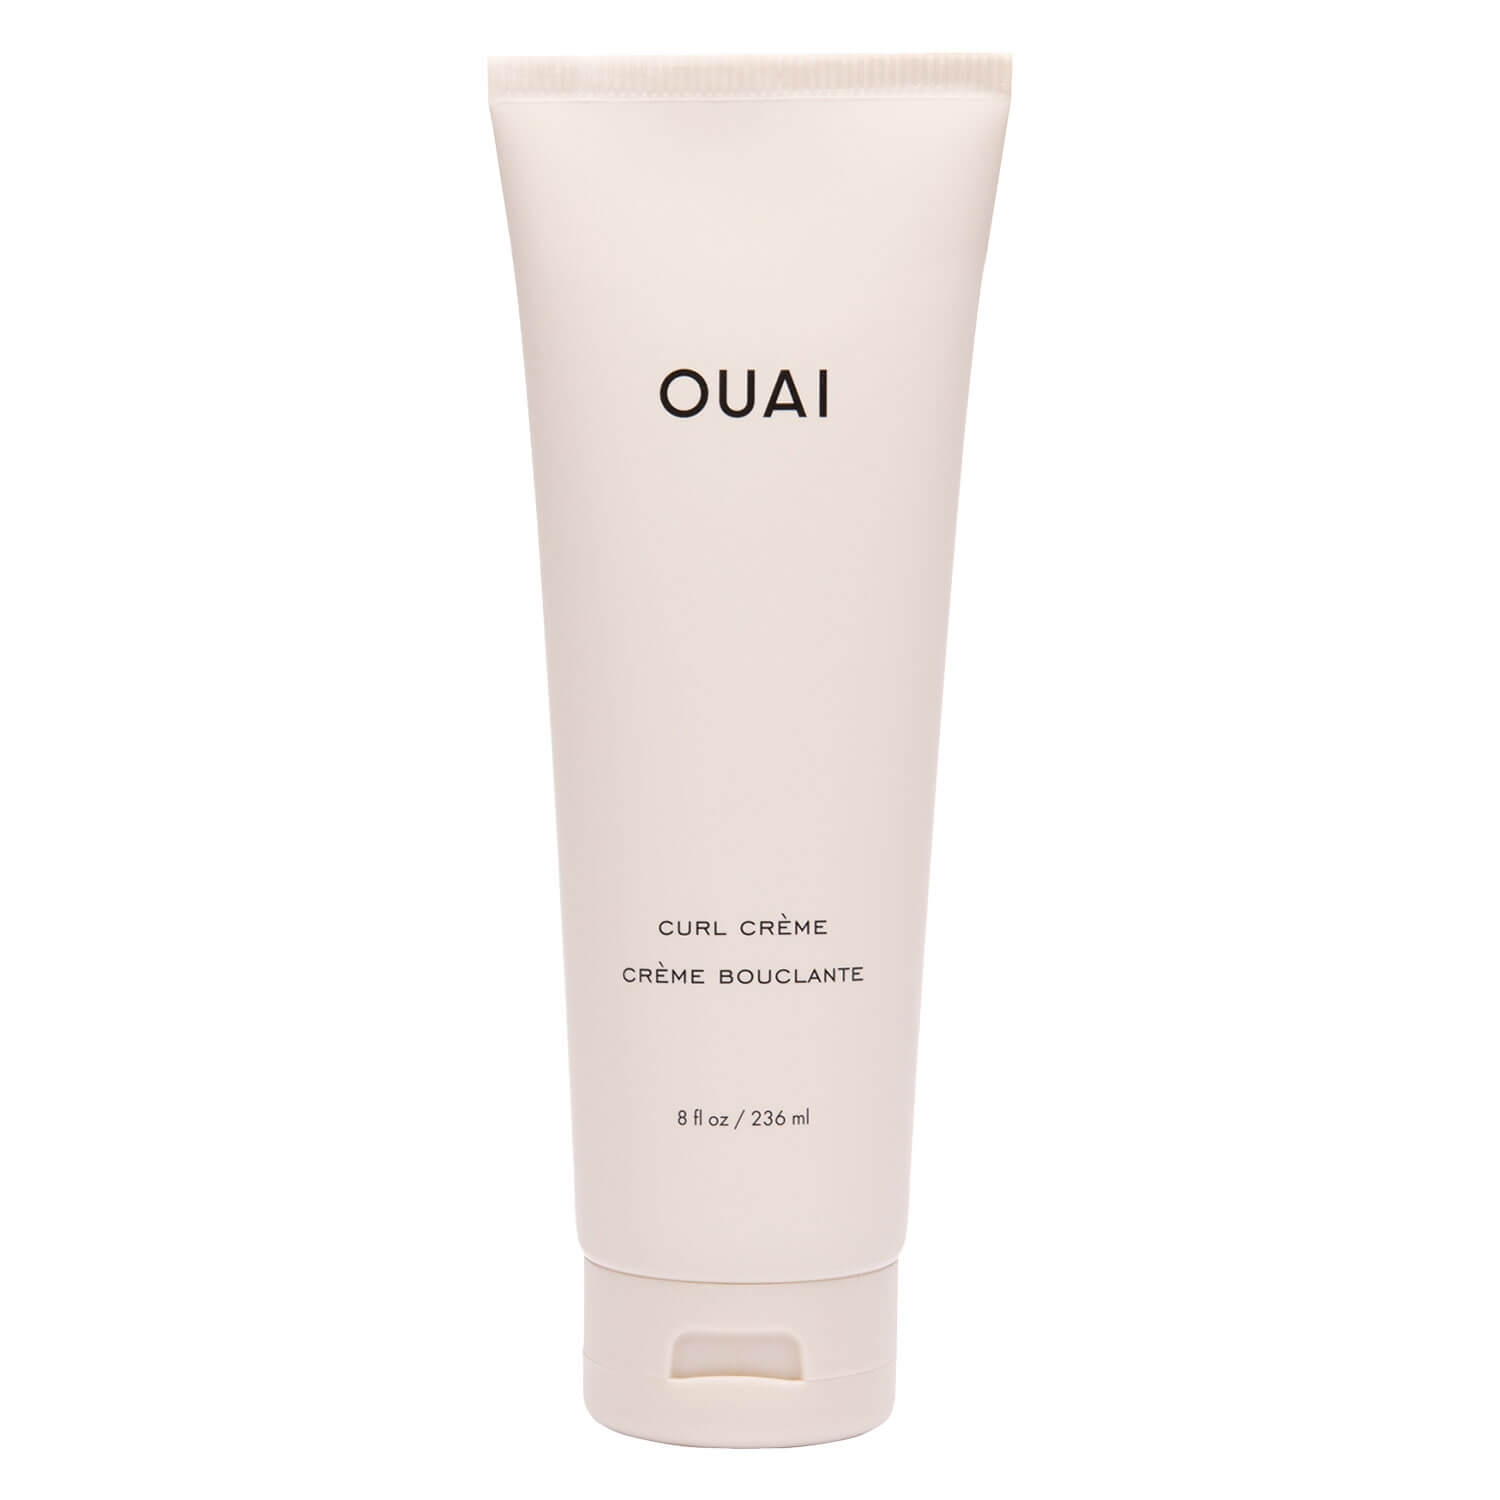 Produktbild von OUAI - Curl Crème